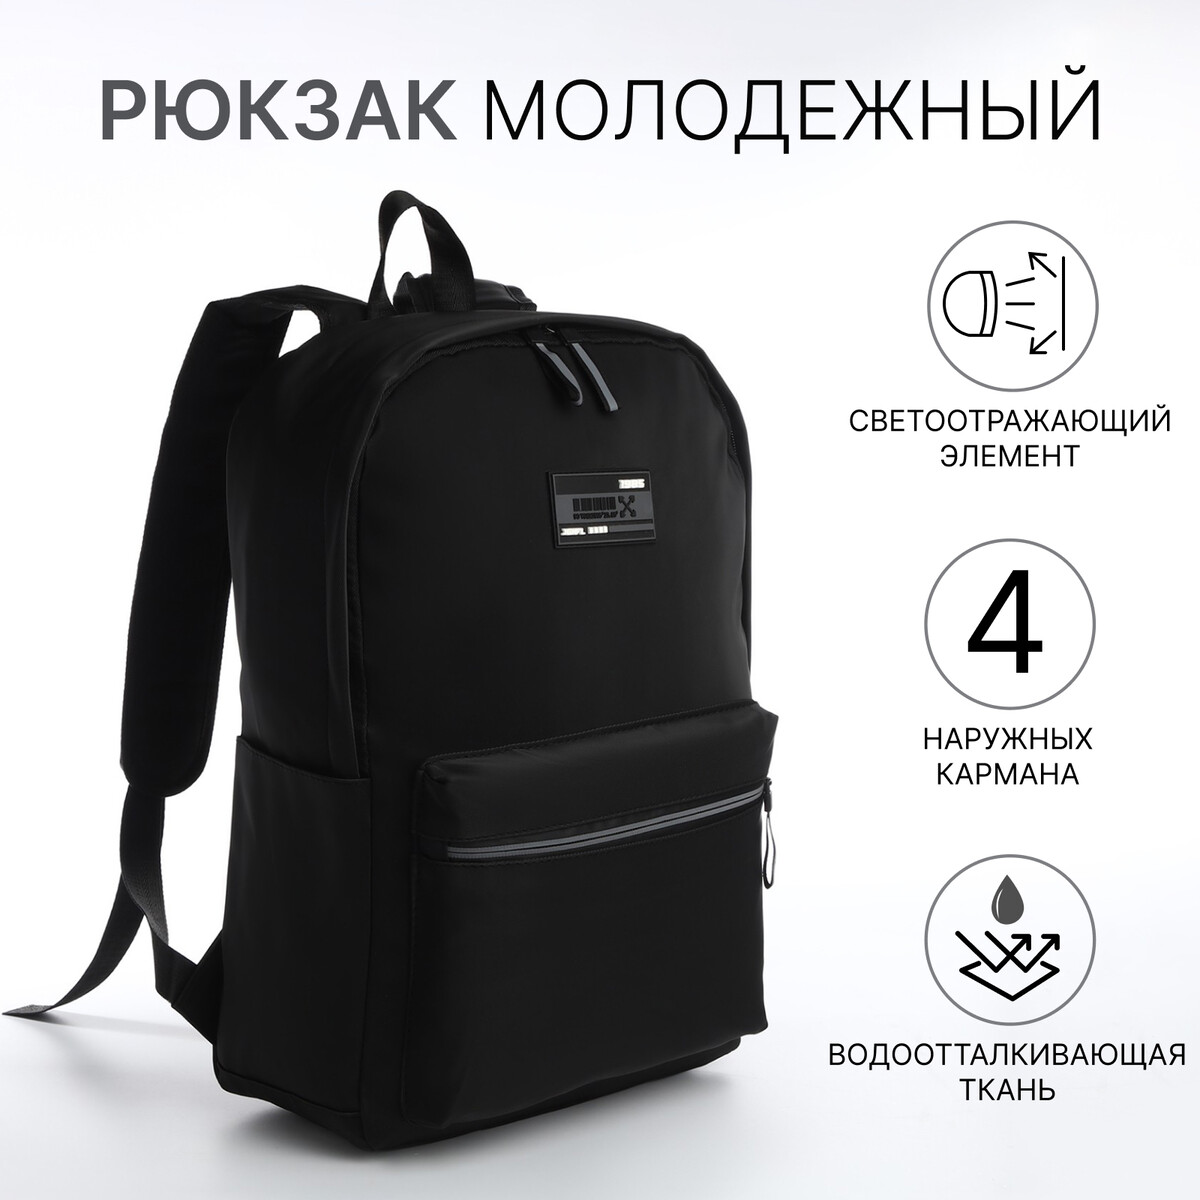 Рюкзак молодежный из текстиля на молнии, 4 кармана, цвет черный/серый рюкзак школьный из текстиля на молнии 4 кармана серый